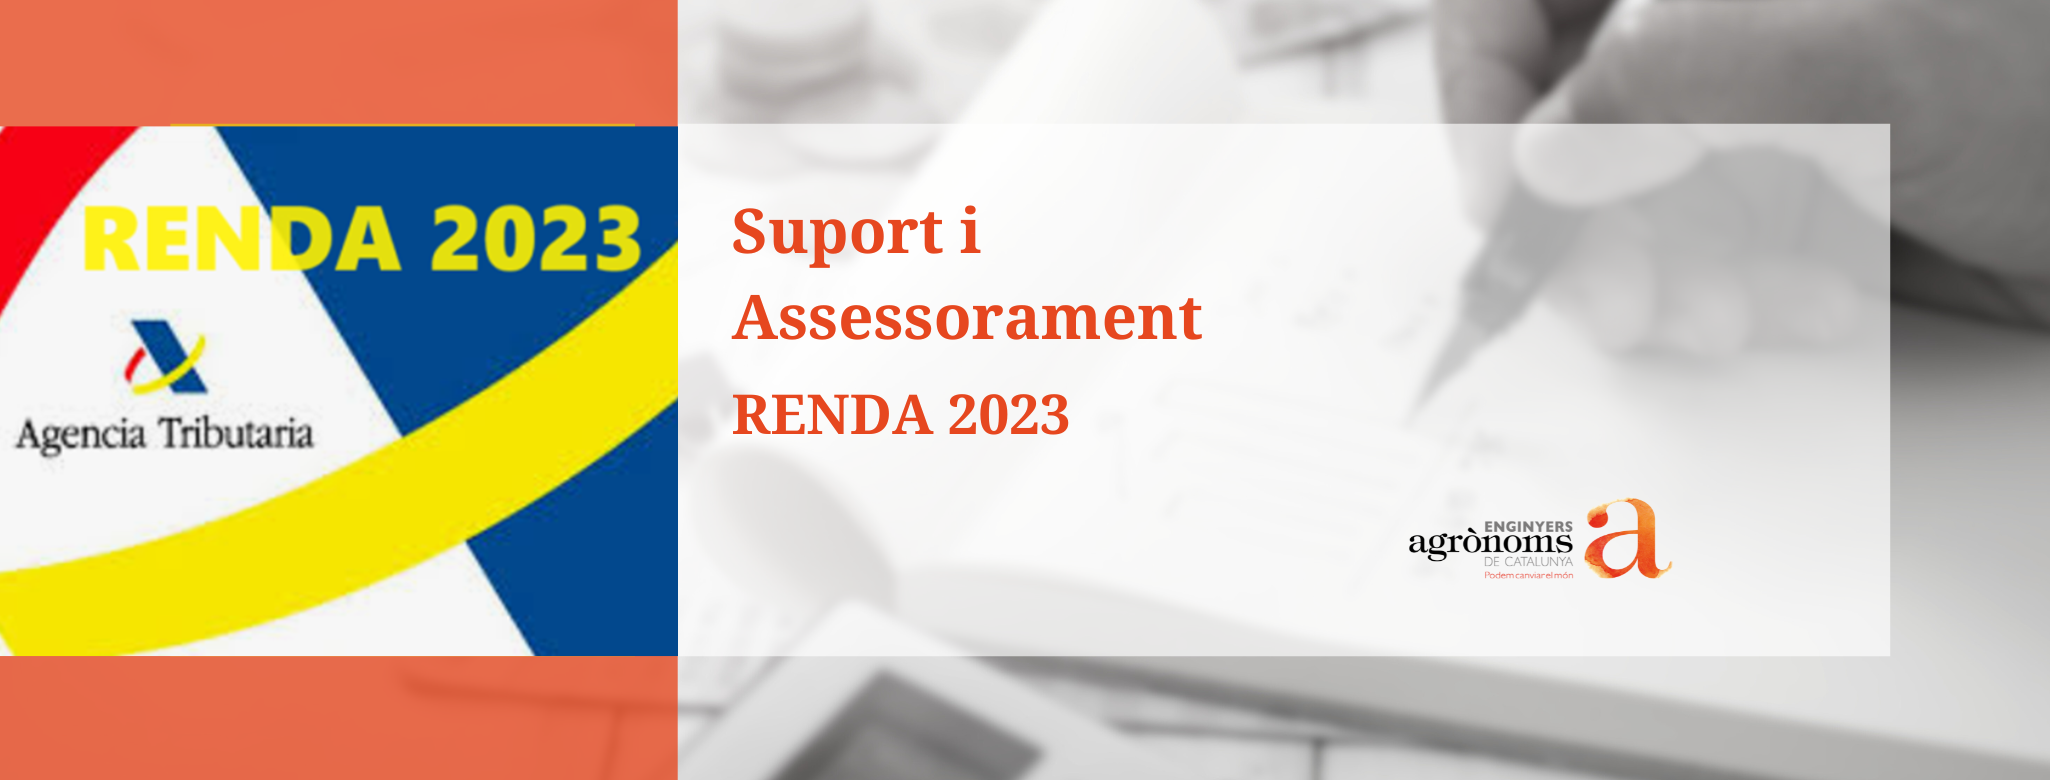 Campanya RENDA 2023. Servei d’Assessorament gratuït Fiscal i Tributari Empresarial